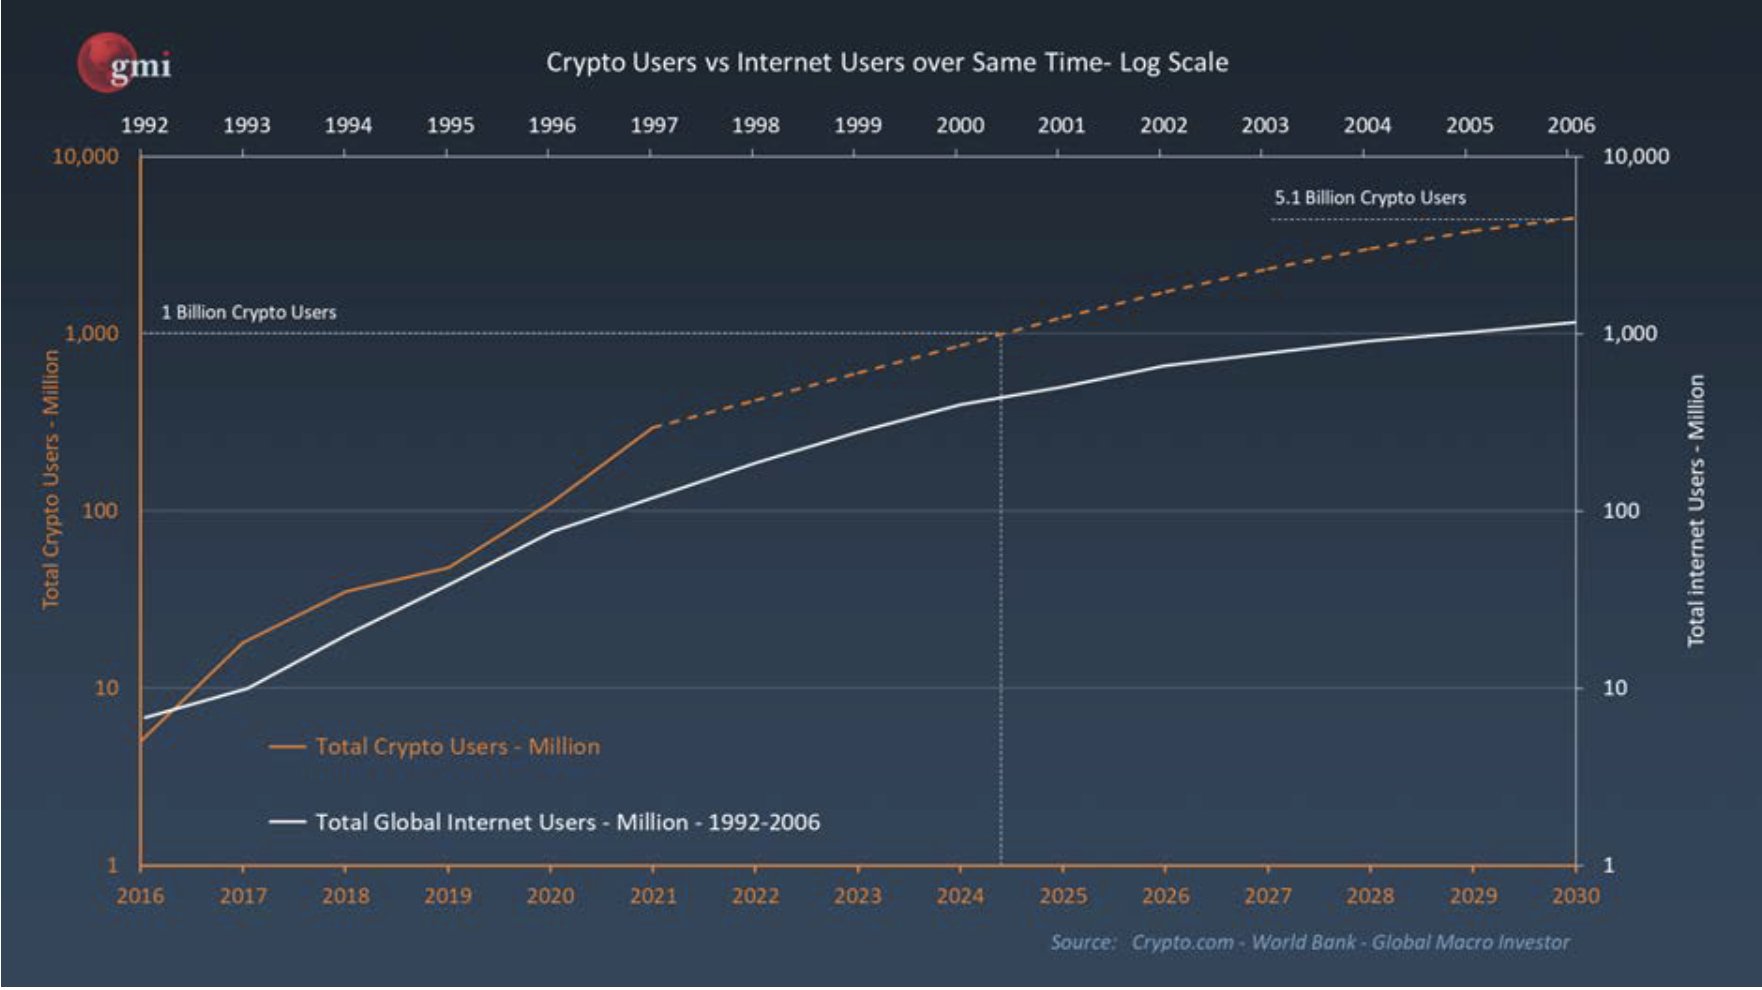 Graphique montrant la courbe d'adoption de la technologie pour les crypto-monnaies et Internet 